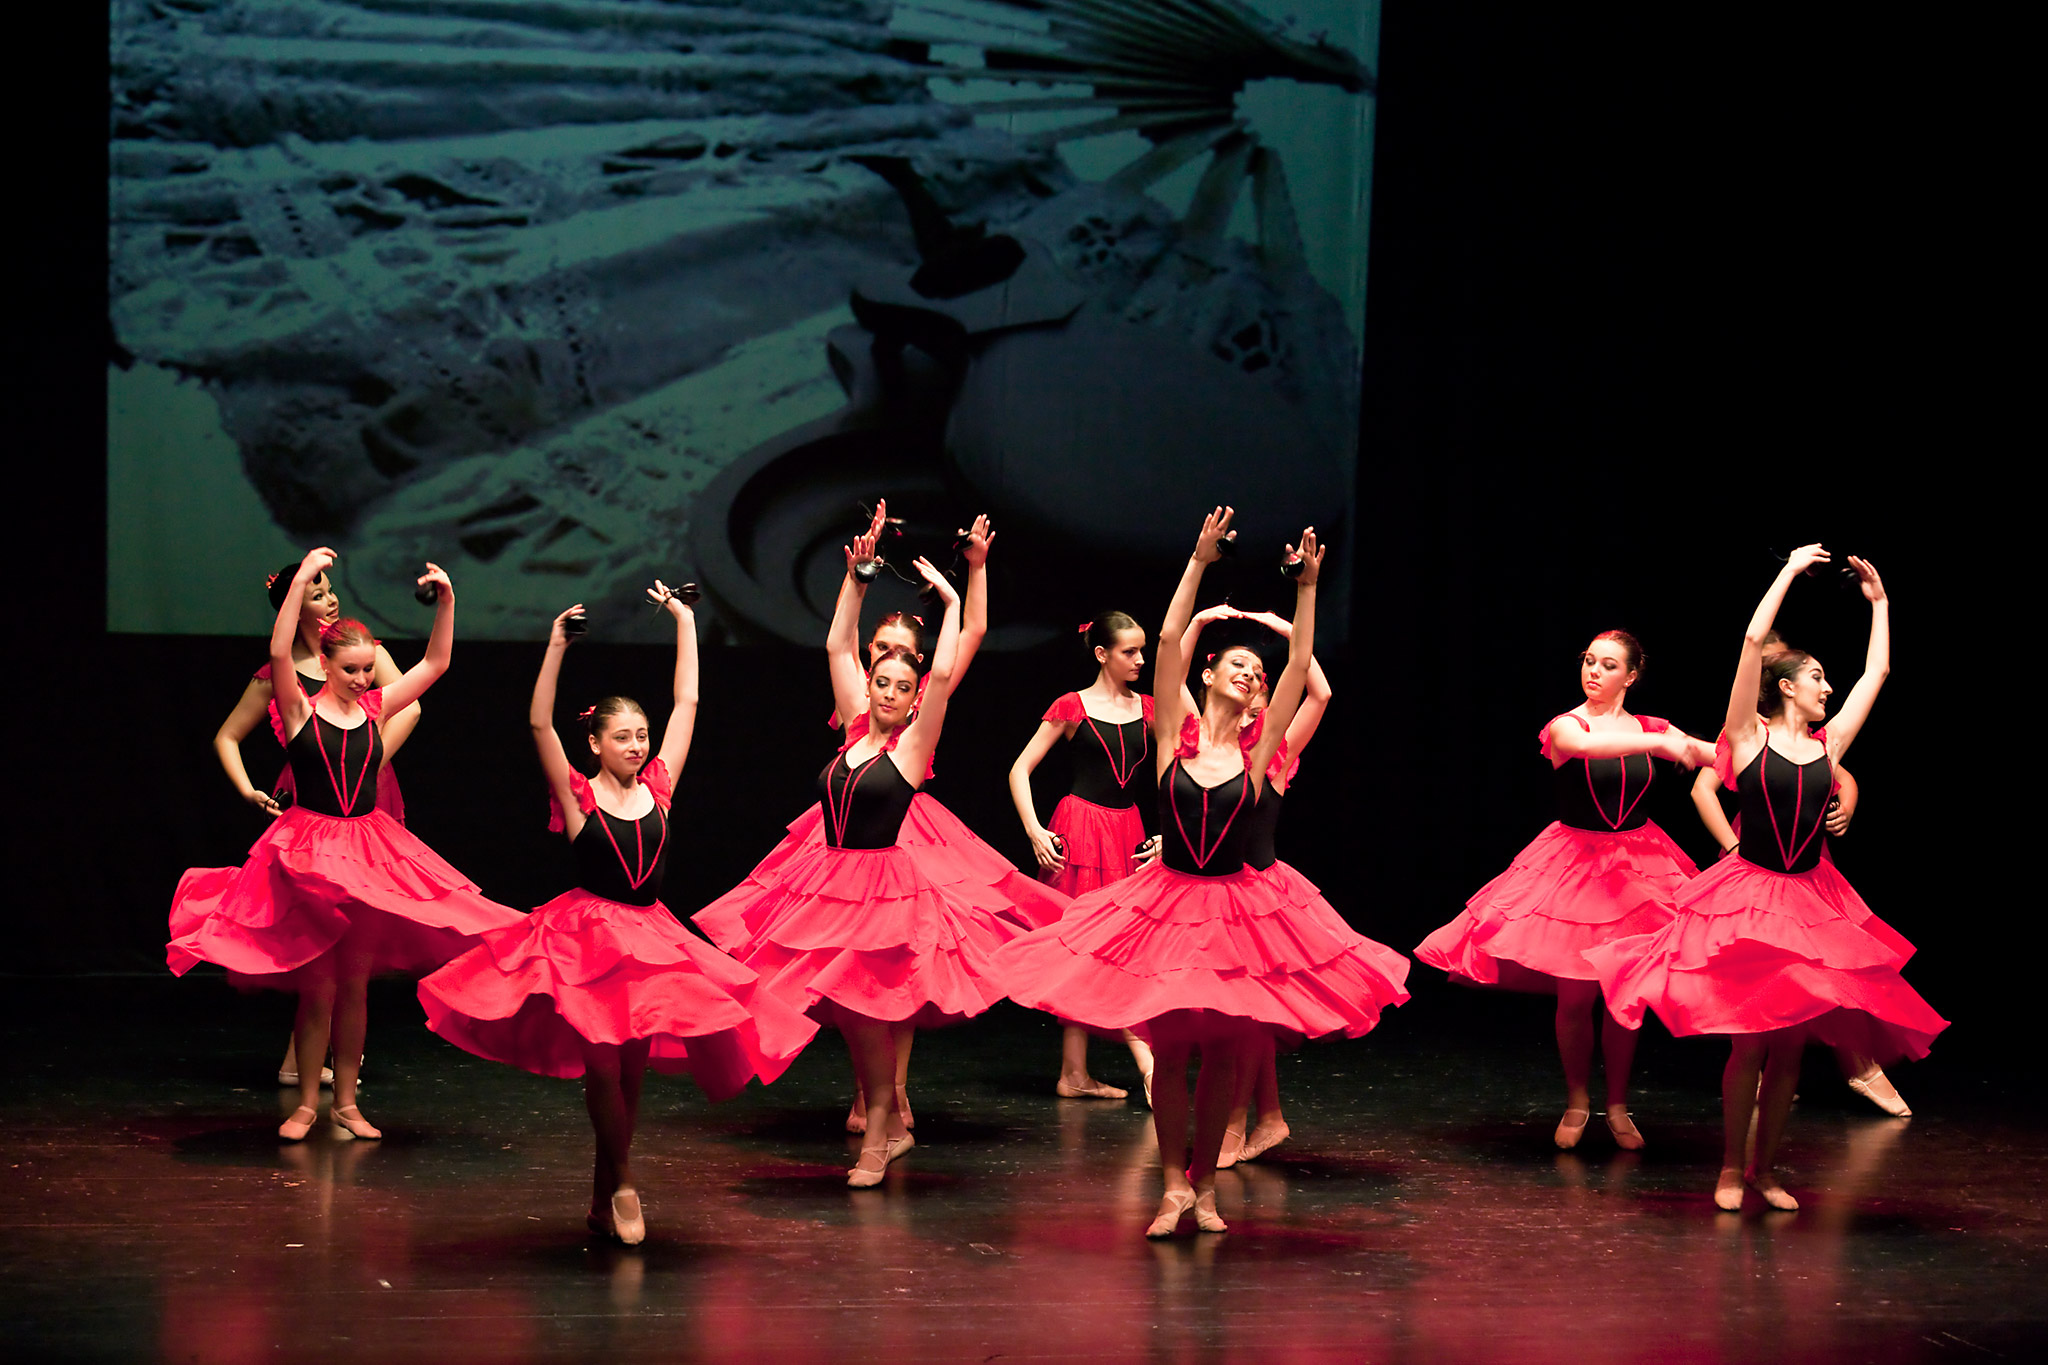 Danza española - image MG_2498 on http://danzasturias.es